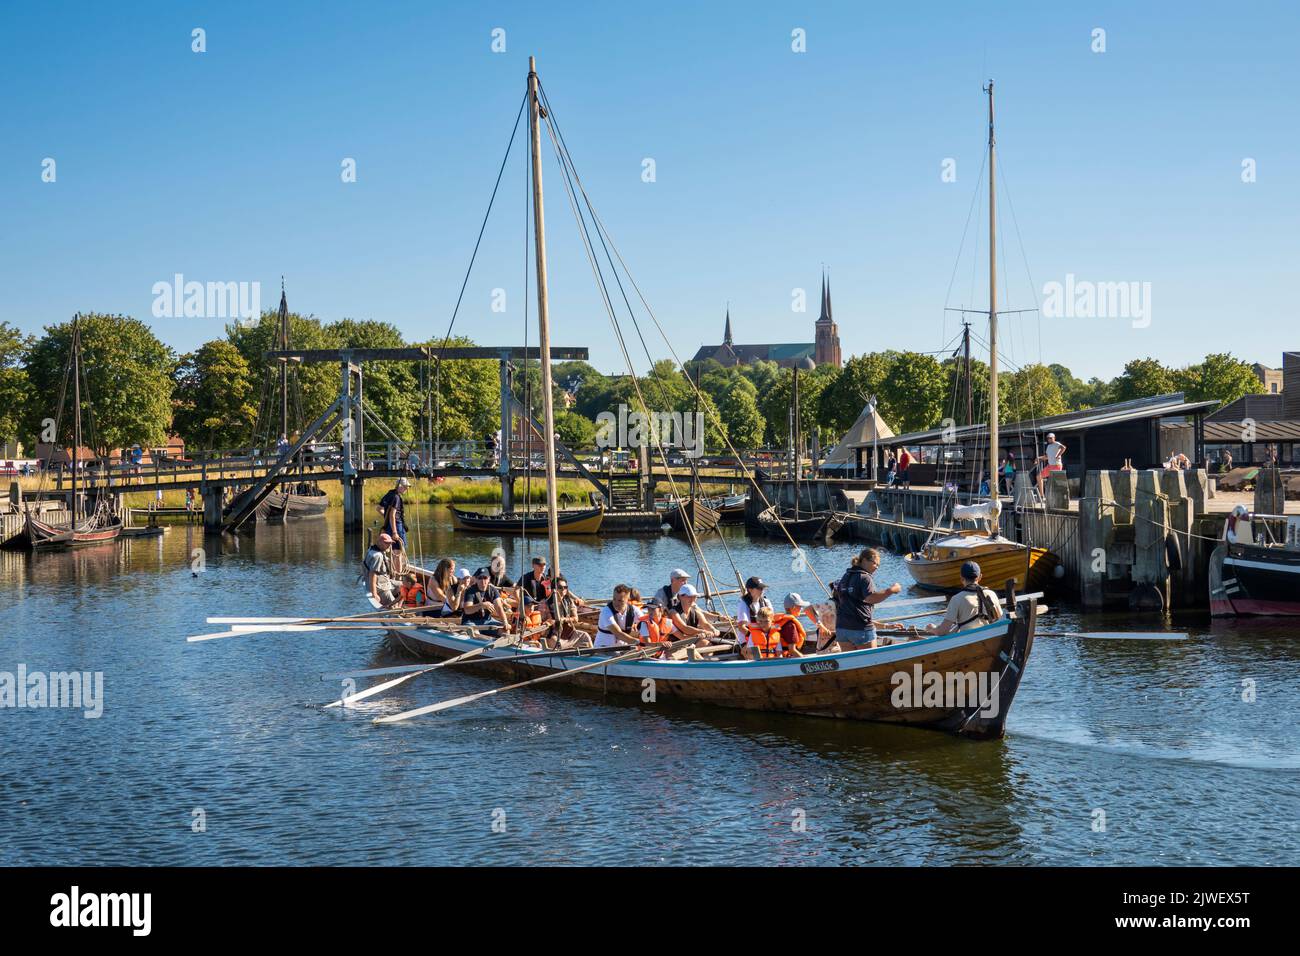 Réplica del barco vikingo que regresa al Museo del barco vikingo con la catedral gótica detrás, Roskilde, Zelanda, Dinamarca, Europa Foto de stock